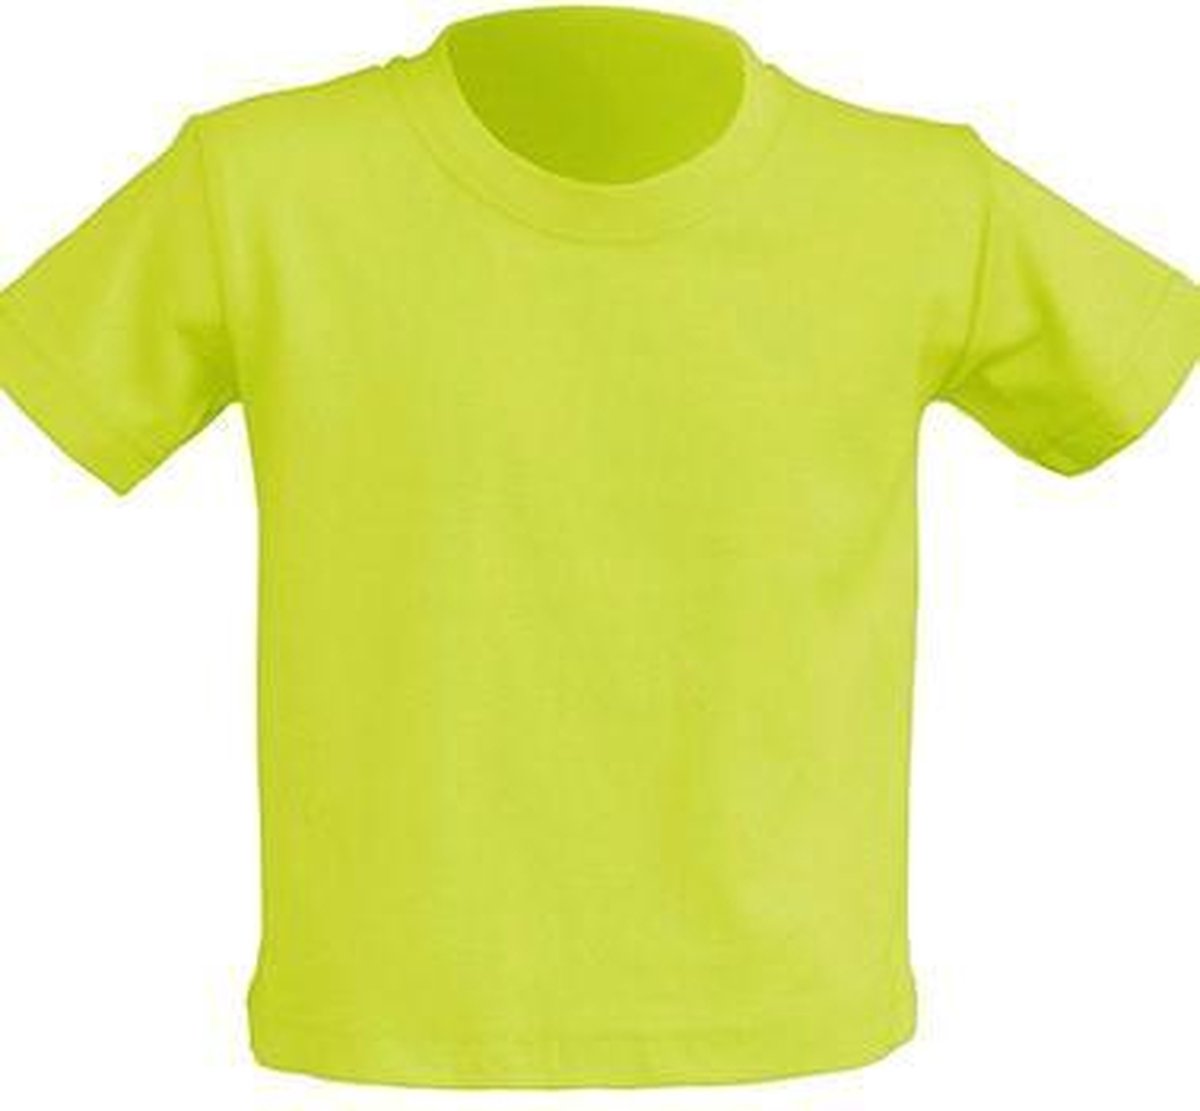 JHK Baby t-shirtjes in pistachio maat 2 jaar - set van 5 stuks